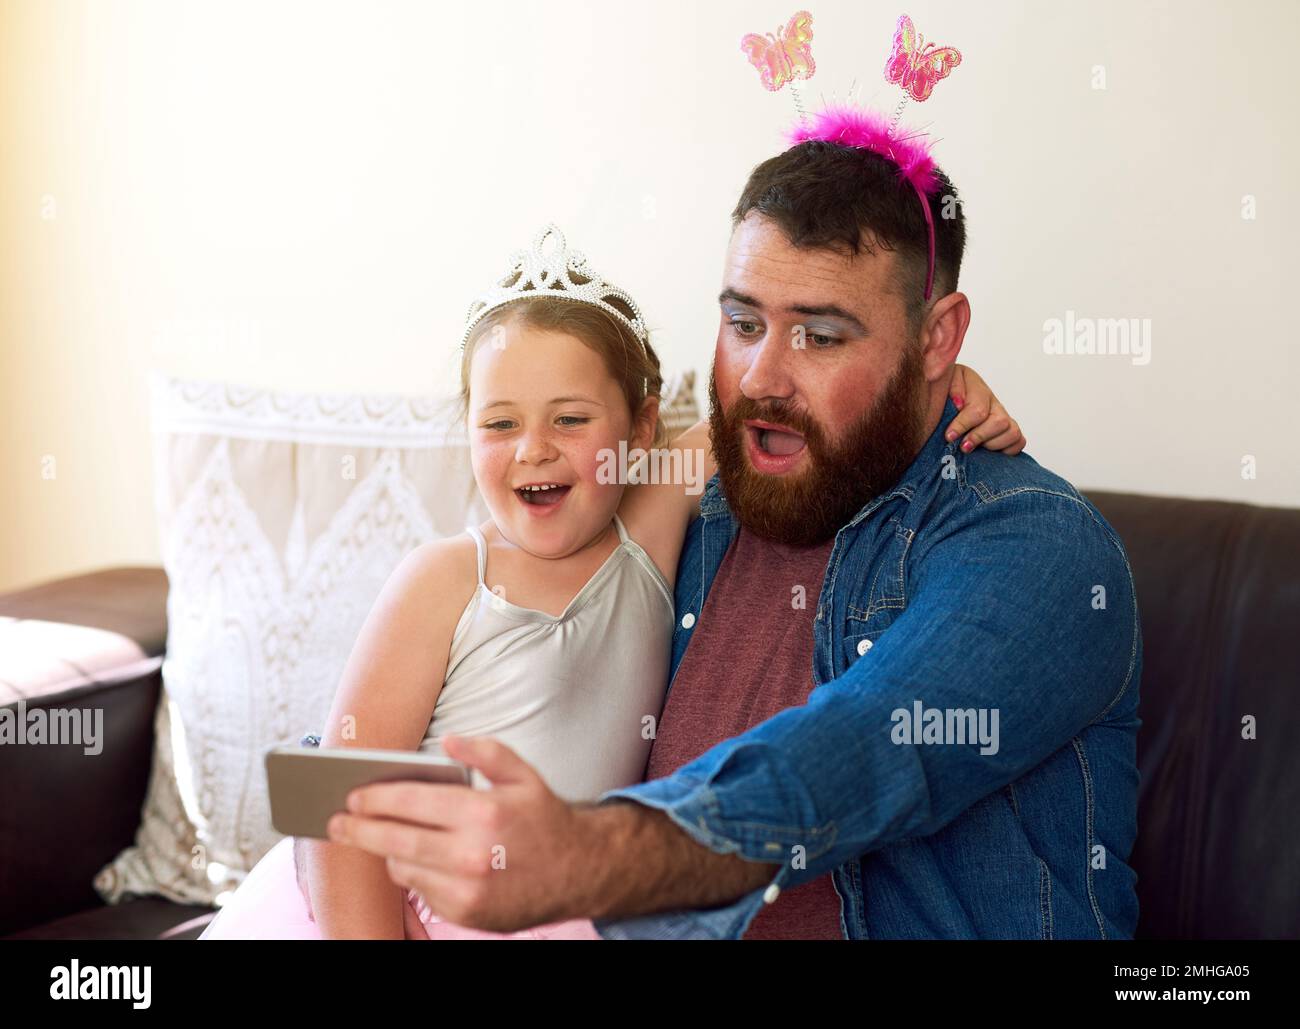 Ottenere un makeover significa il relativo tempo del selfie. una ragazza adorabile che gioca vestire e prendere selfie con suo padre a casa. Foto Stock